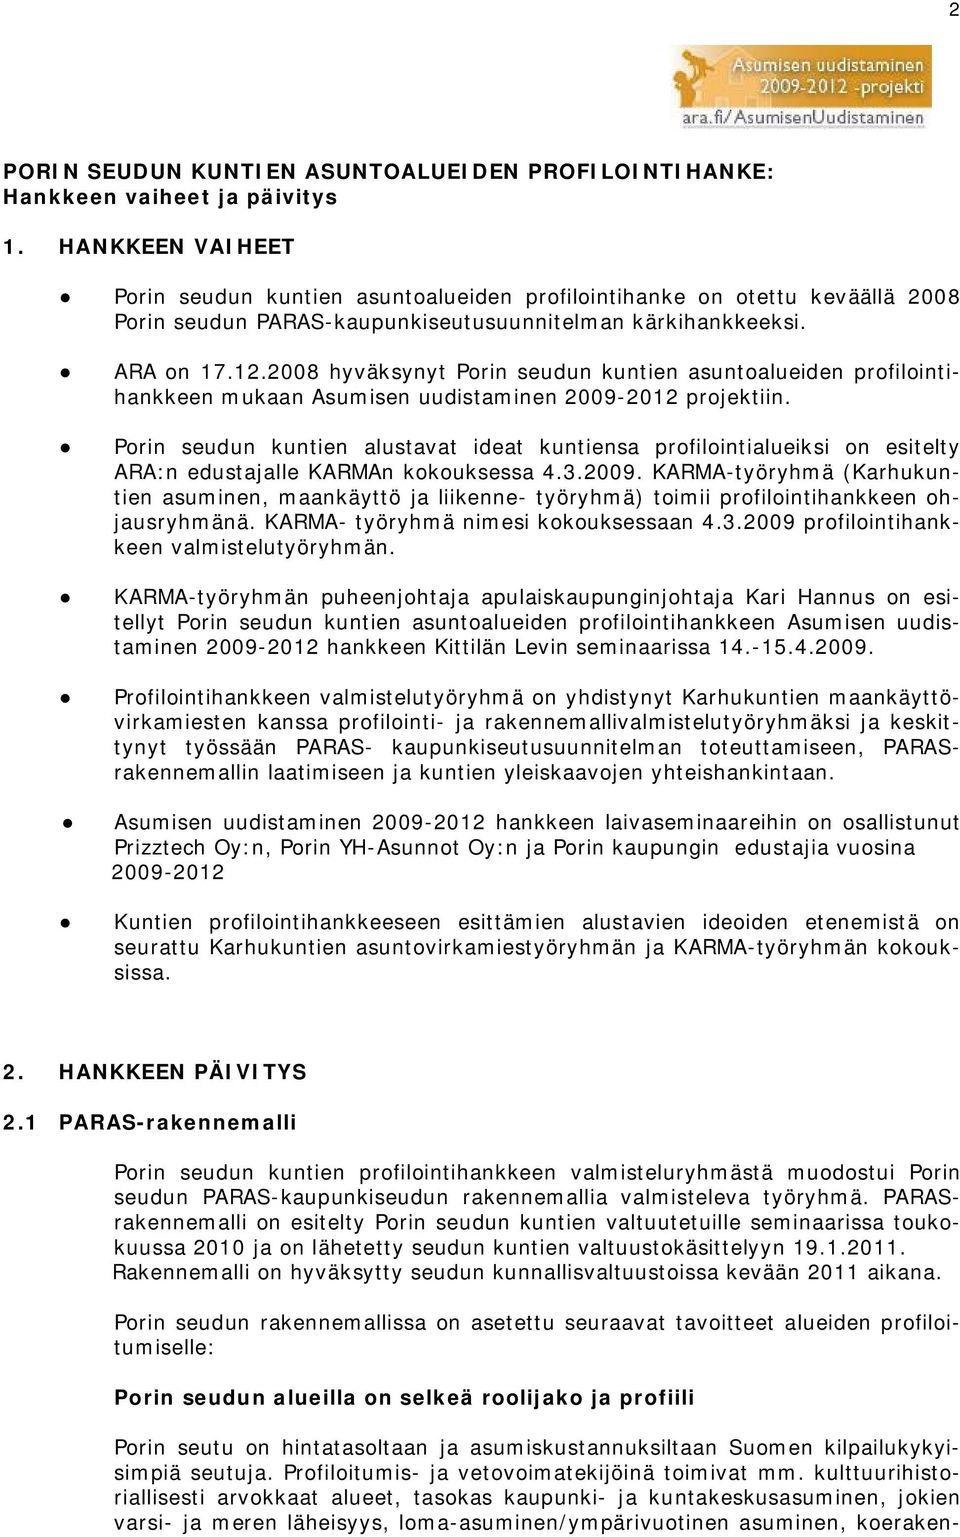 2008 hyväksynyt Porin seudun kuntien asuntoalueiden profilointihankkeen mukaan Asumisen uudistaminen 2009-2012 projektiin.